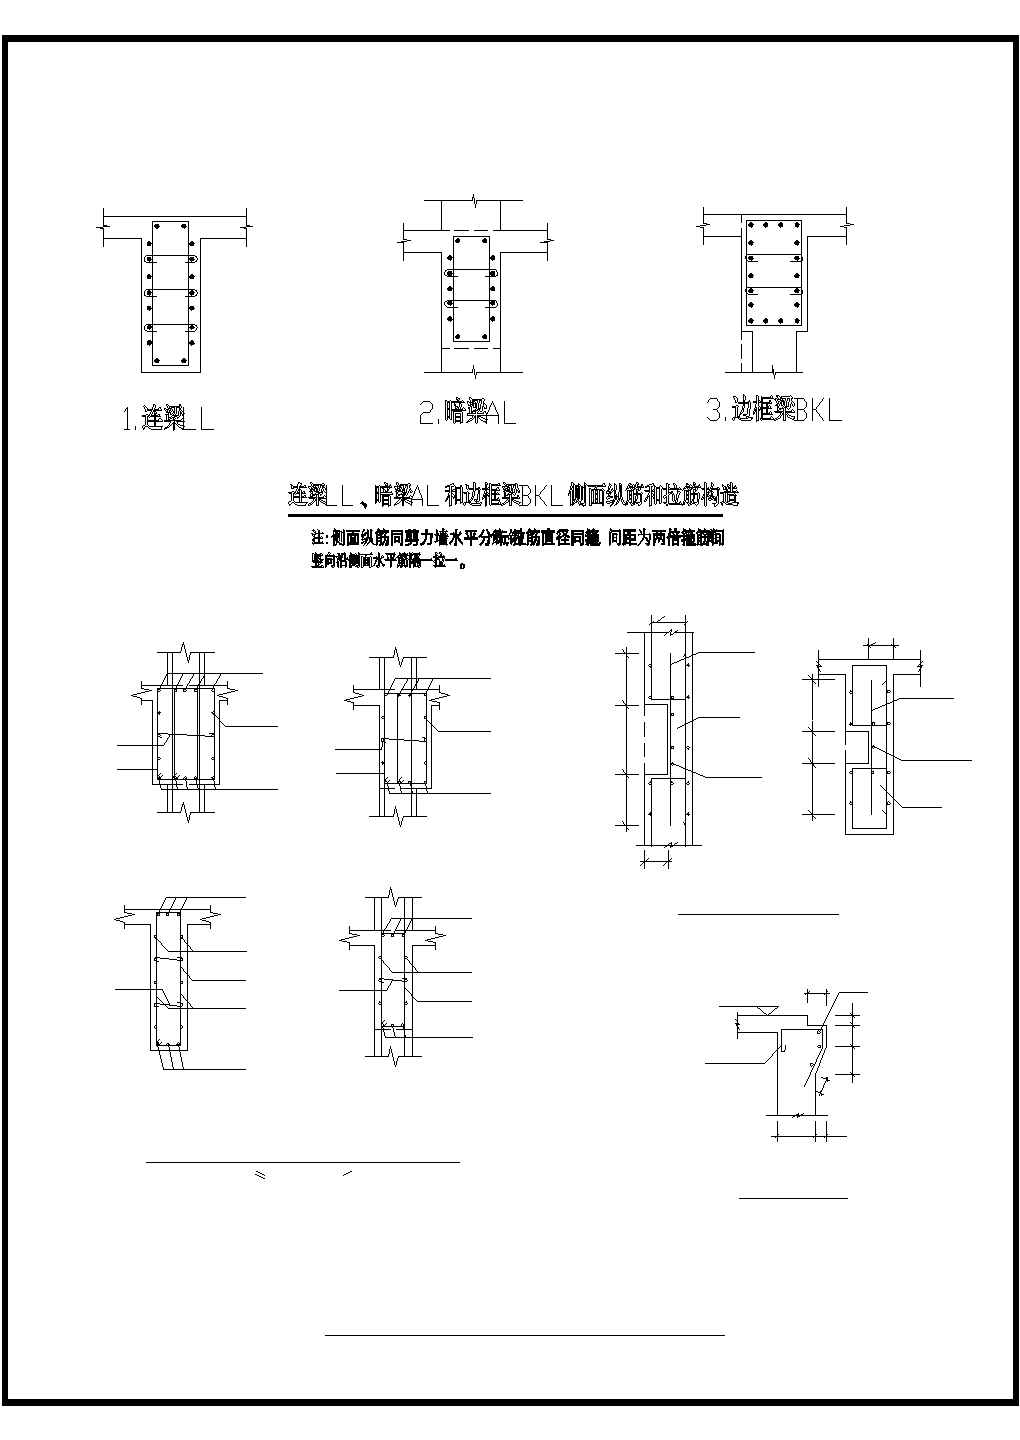 某建筑剪力墙LLALBKL系列配筋构造设计施工CAD图纸